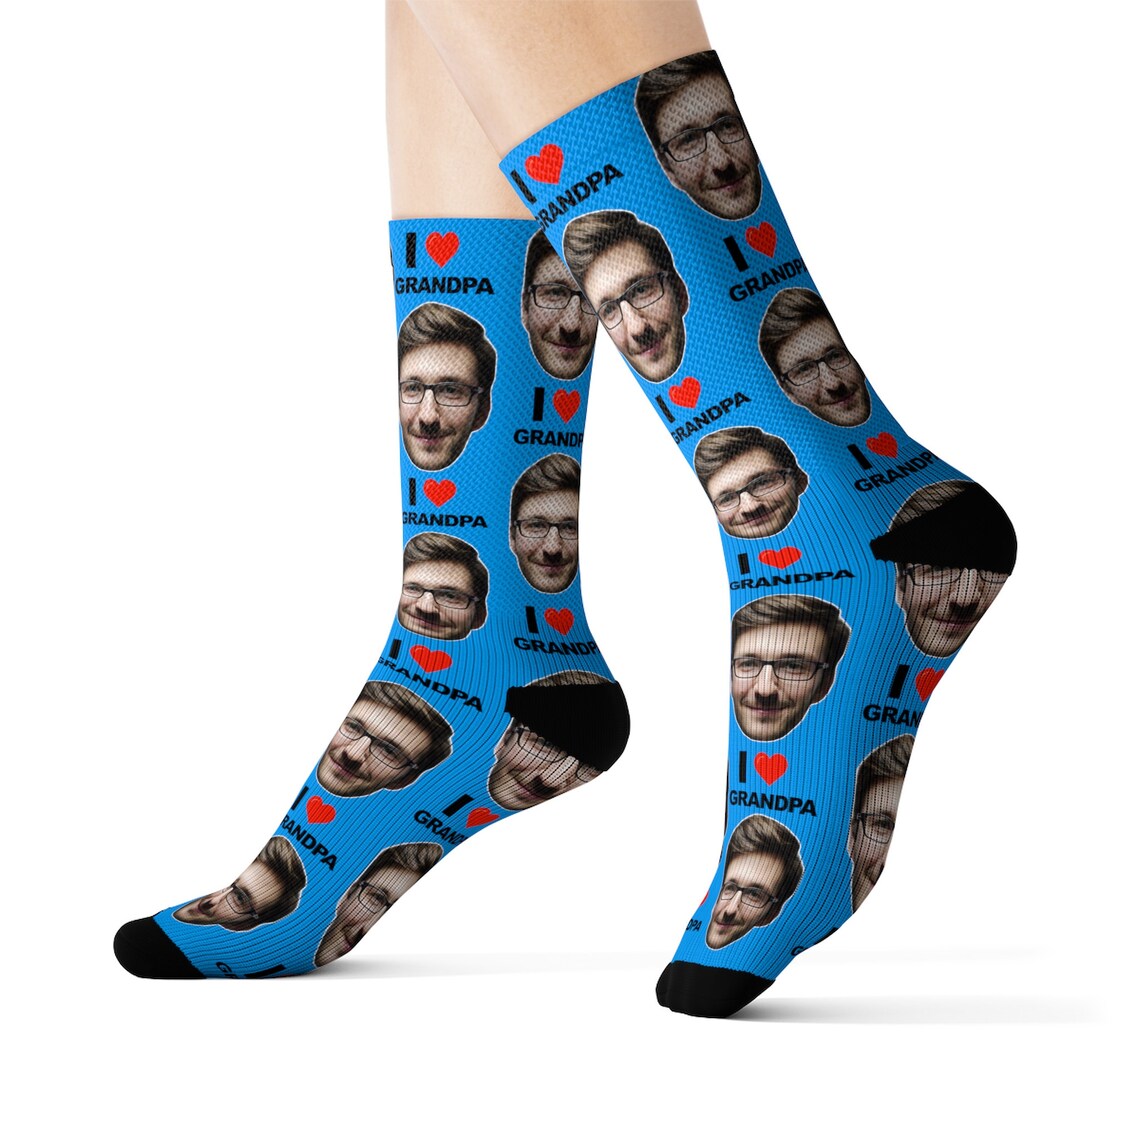 Custom Grandpa Socks Put Any Text and Face On The Socks | Etsy